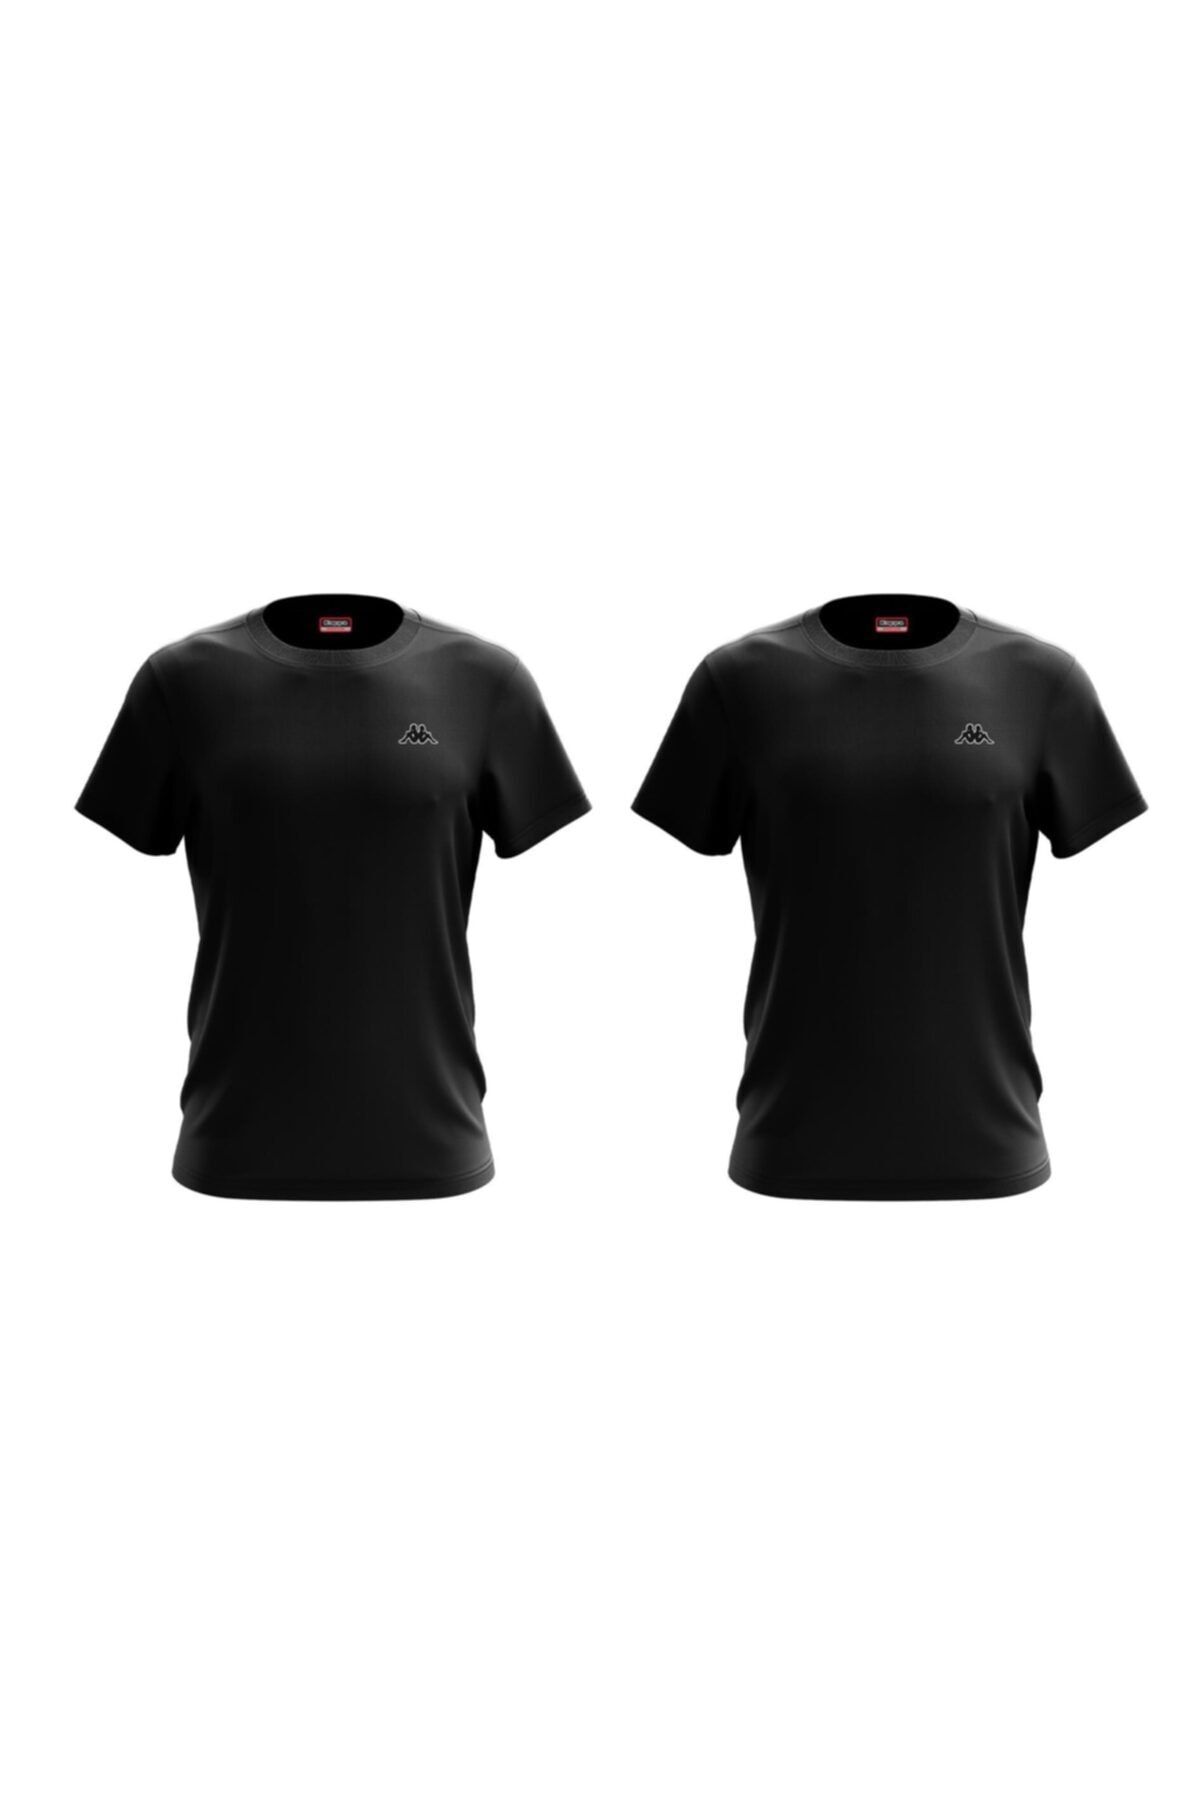 Kappa Erkek Spor T-Shirt - 301TW40-005